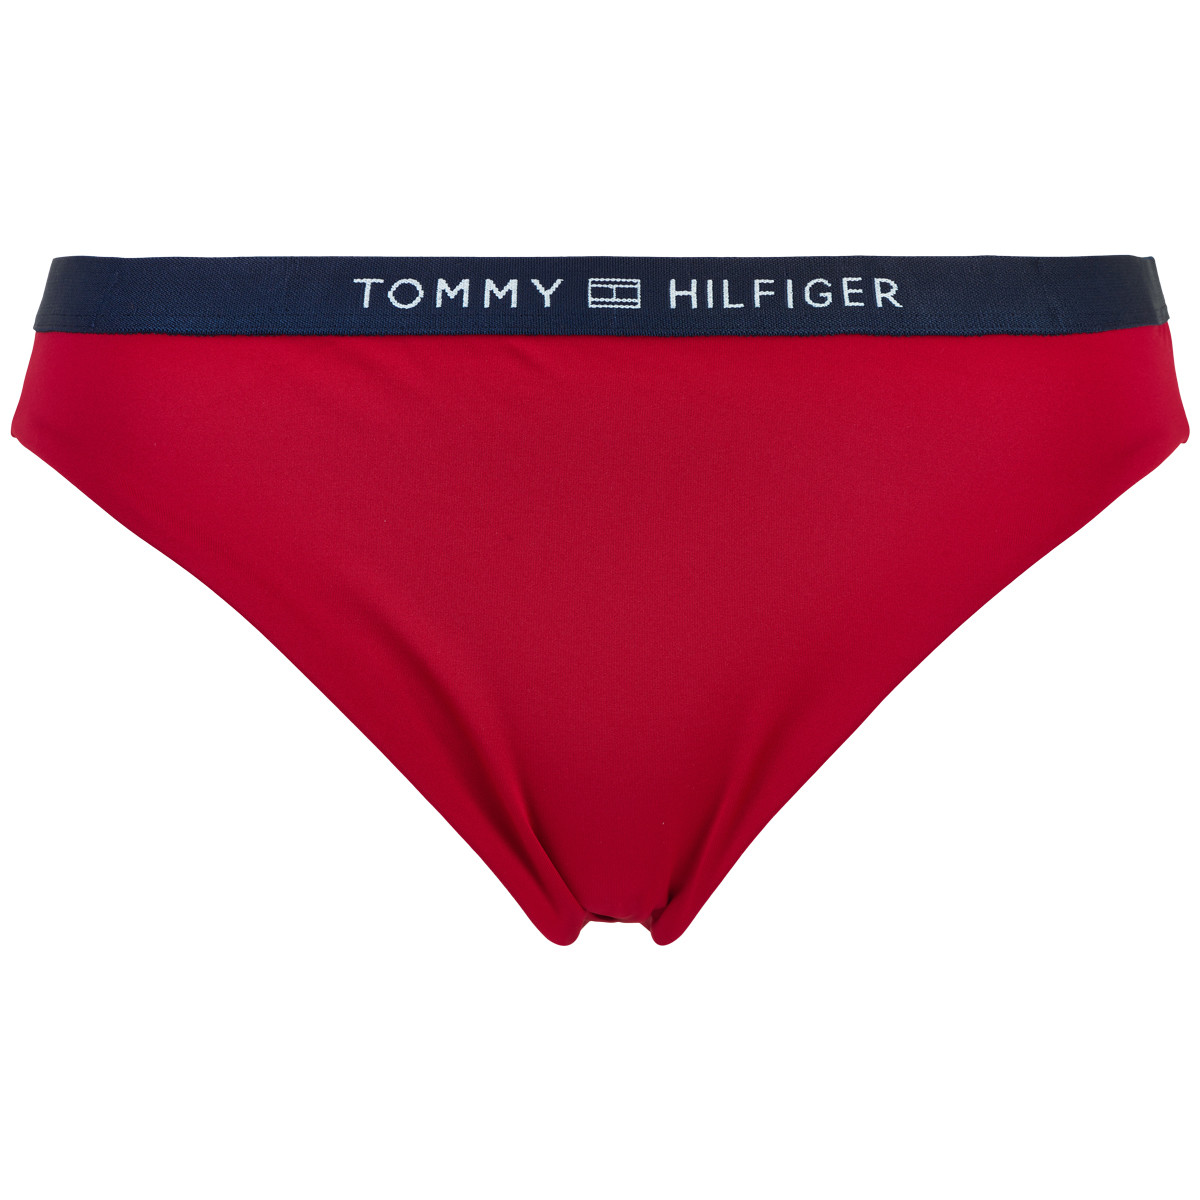 Tommy Hilfiger Lingeri Bikini Tai trusse, Farve: Rød, Størrelse: XS, Dame